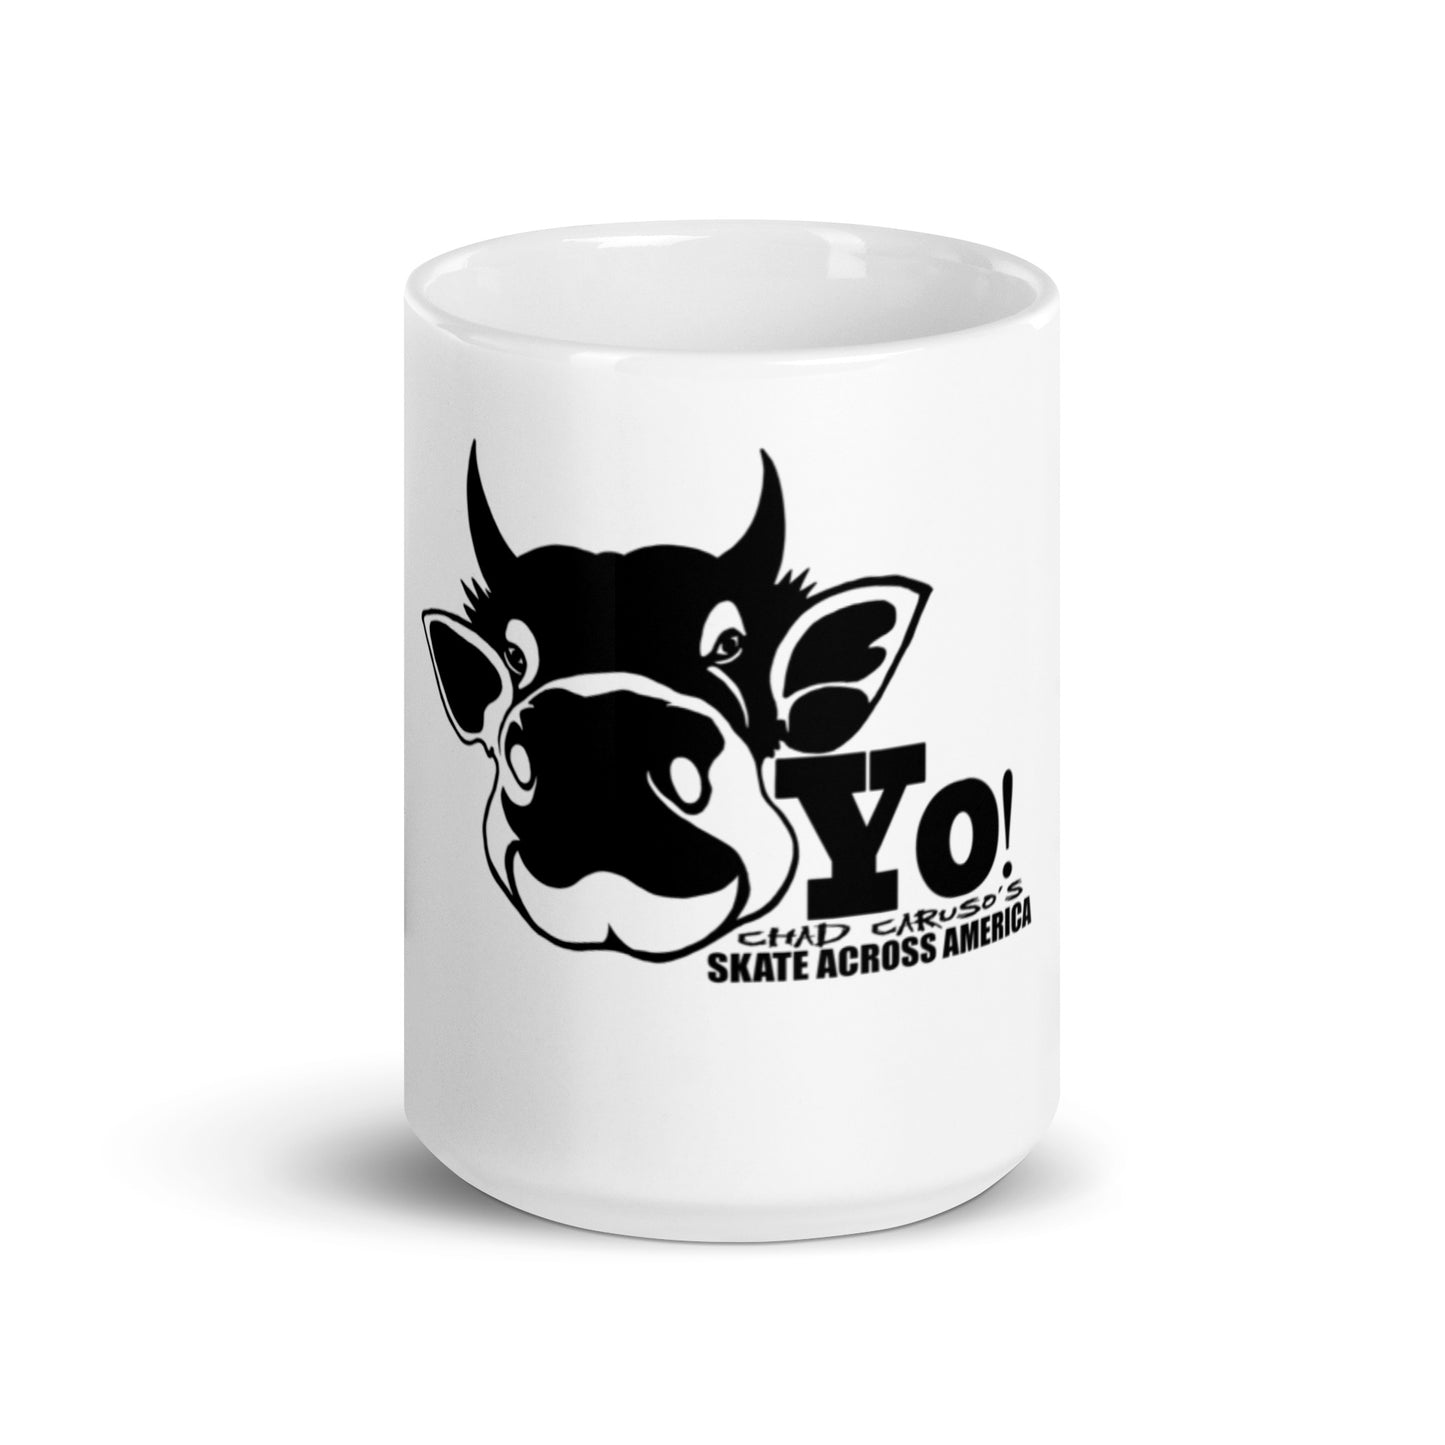 “Yo!” Cow Skate Across America White Coffee Mug